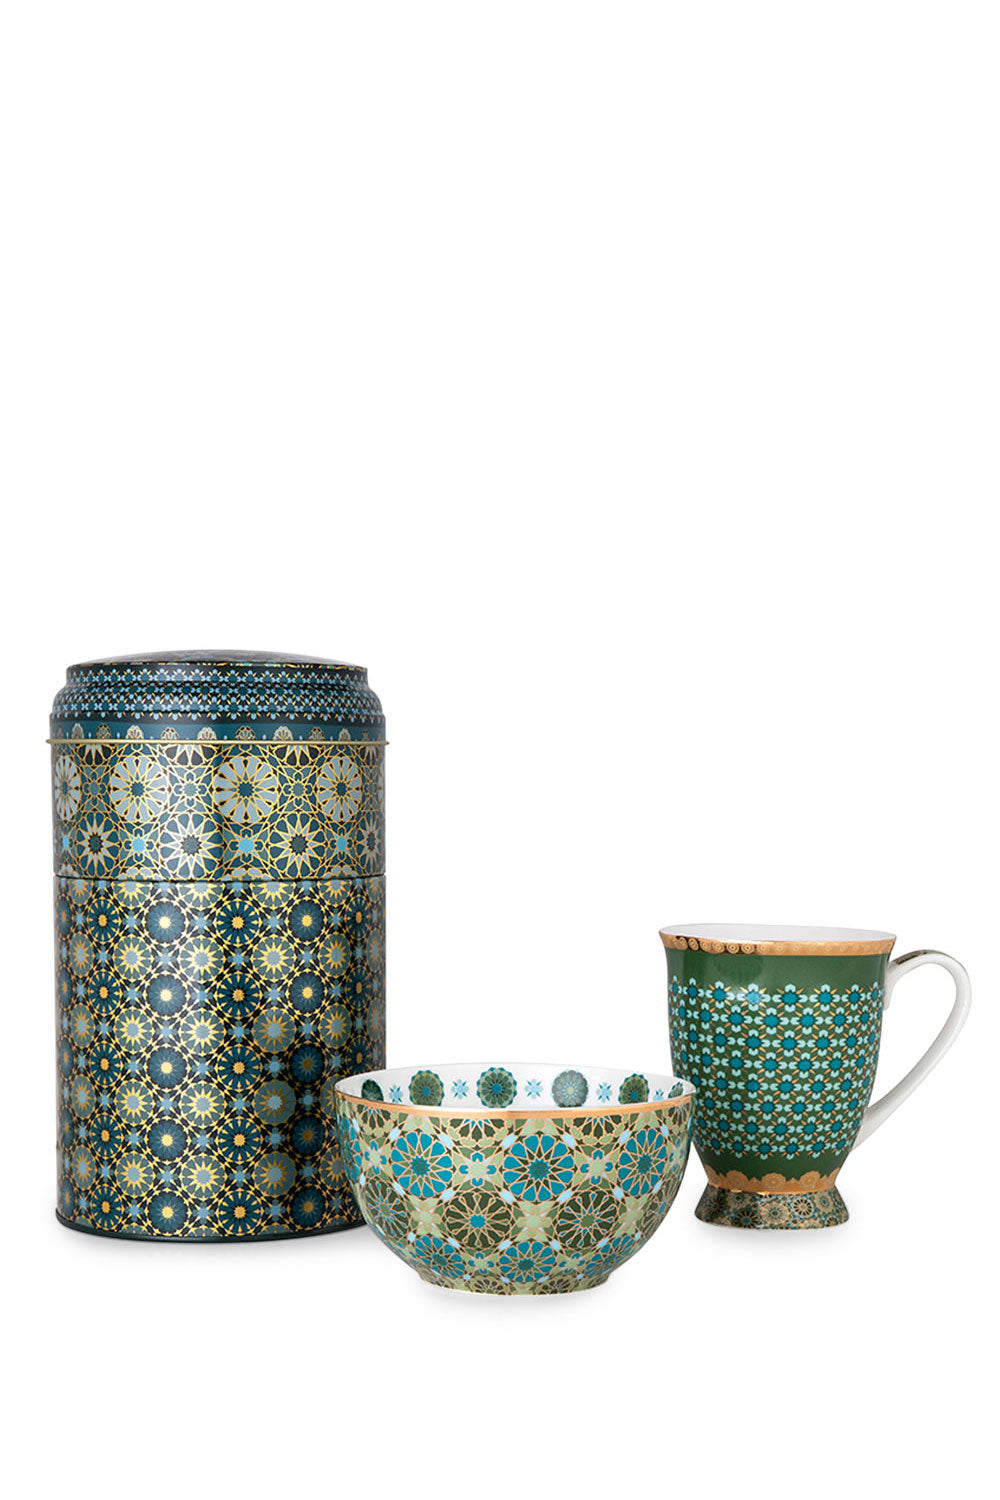 Andalusia Tin Box with Mug and Bowl - Maison7